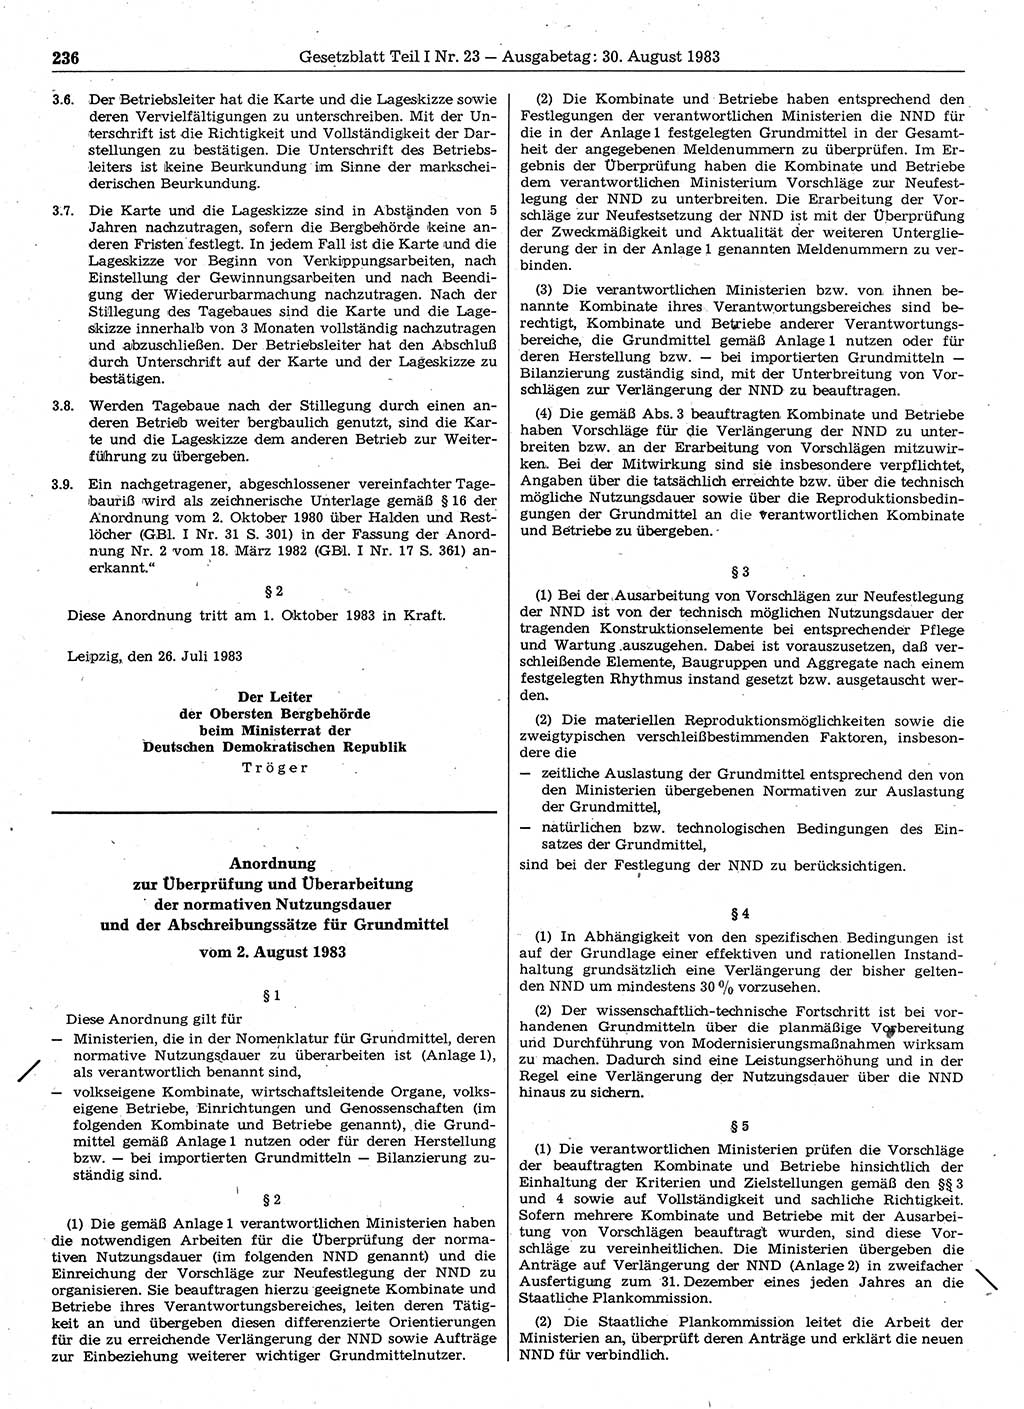 Gesetzblatt (GBl.) der Deutschen Demokratischen Republik (DDR) Teil Ⅰ 1983, Seite 236 (GBl. DDR Ⅰ 1983, S. 236)